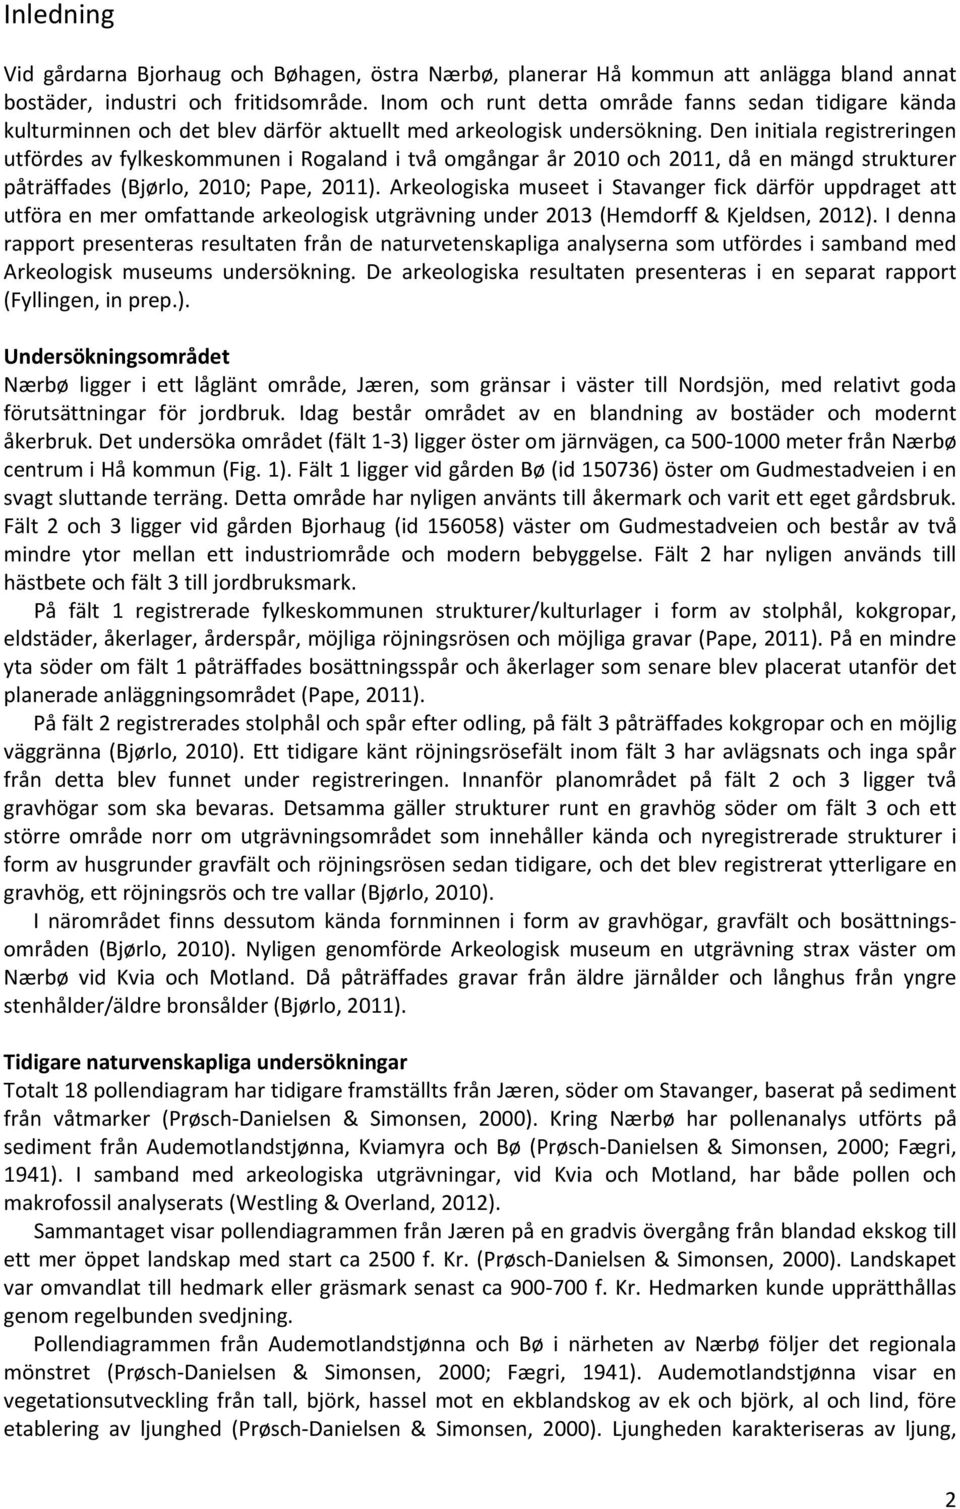 Den initiala registreringen utfördes av fylkeskommunen i Rogaland i två omgångar år 2010 och 2011, då en mängd strukturer påträffades (Bjørlo, 2010; Pape, 2011).